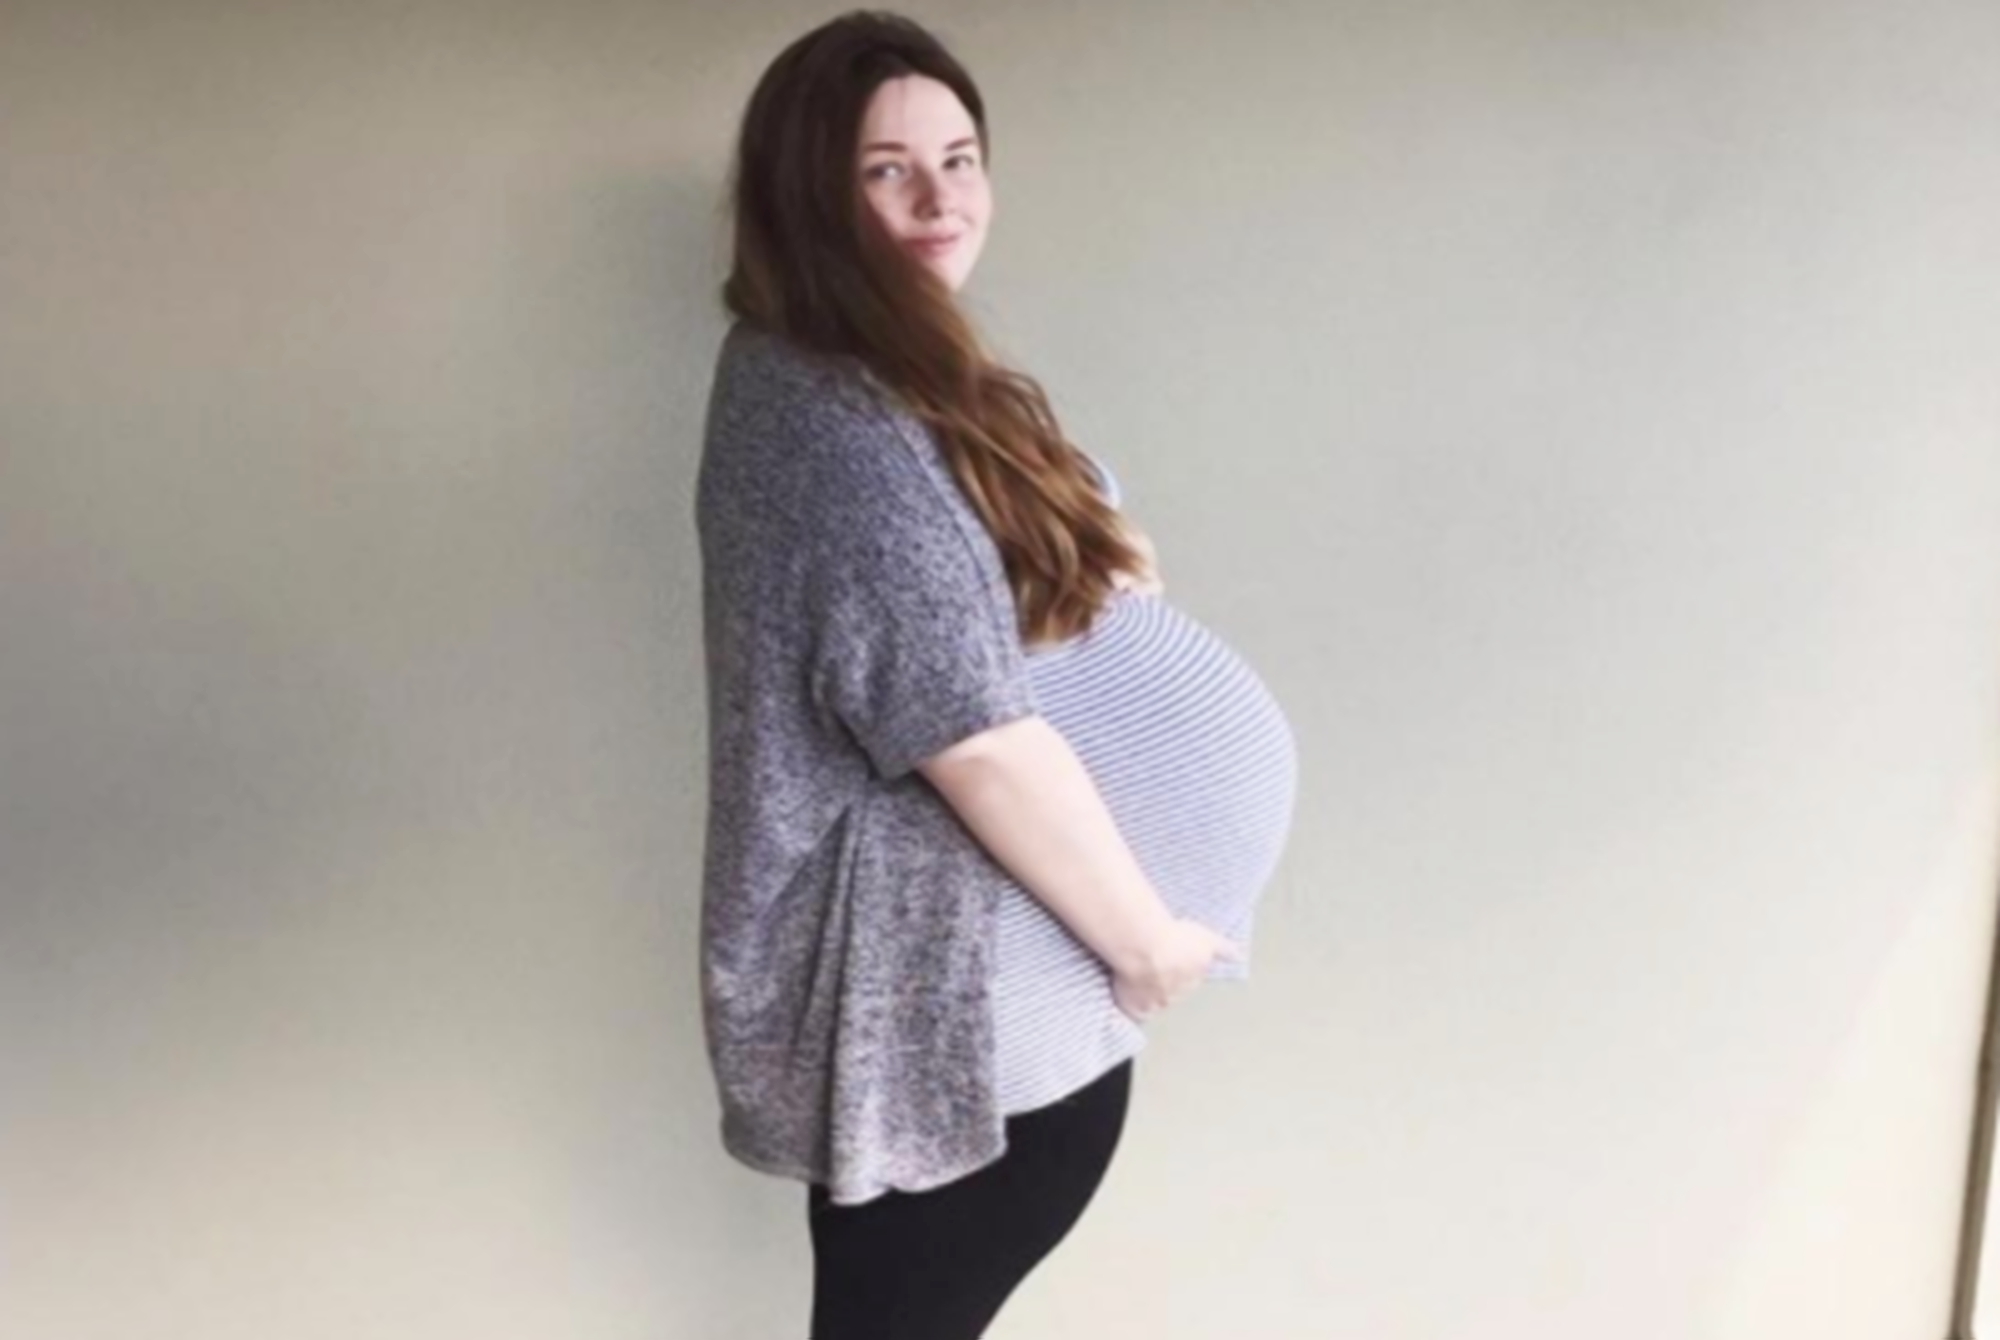 孕妇肚型能预示胎儿性别?是真是假?科学和迂腐的对撞